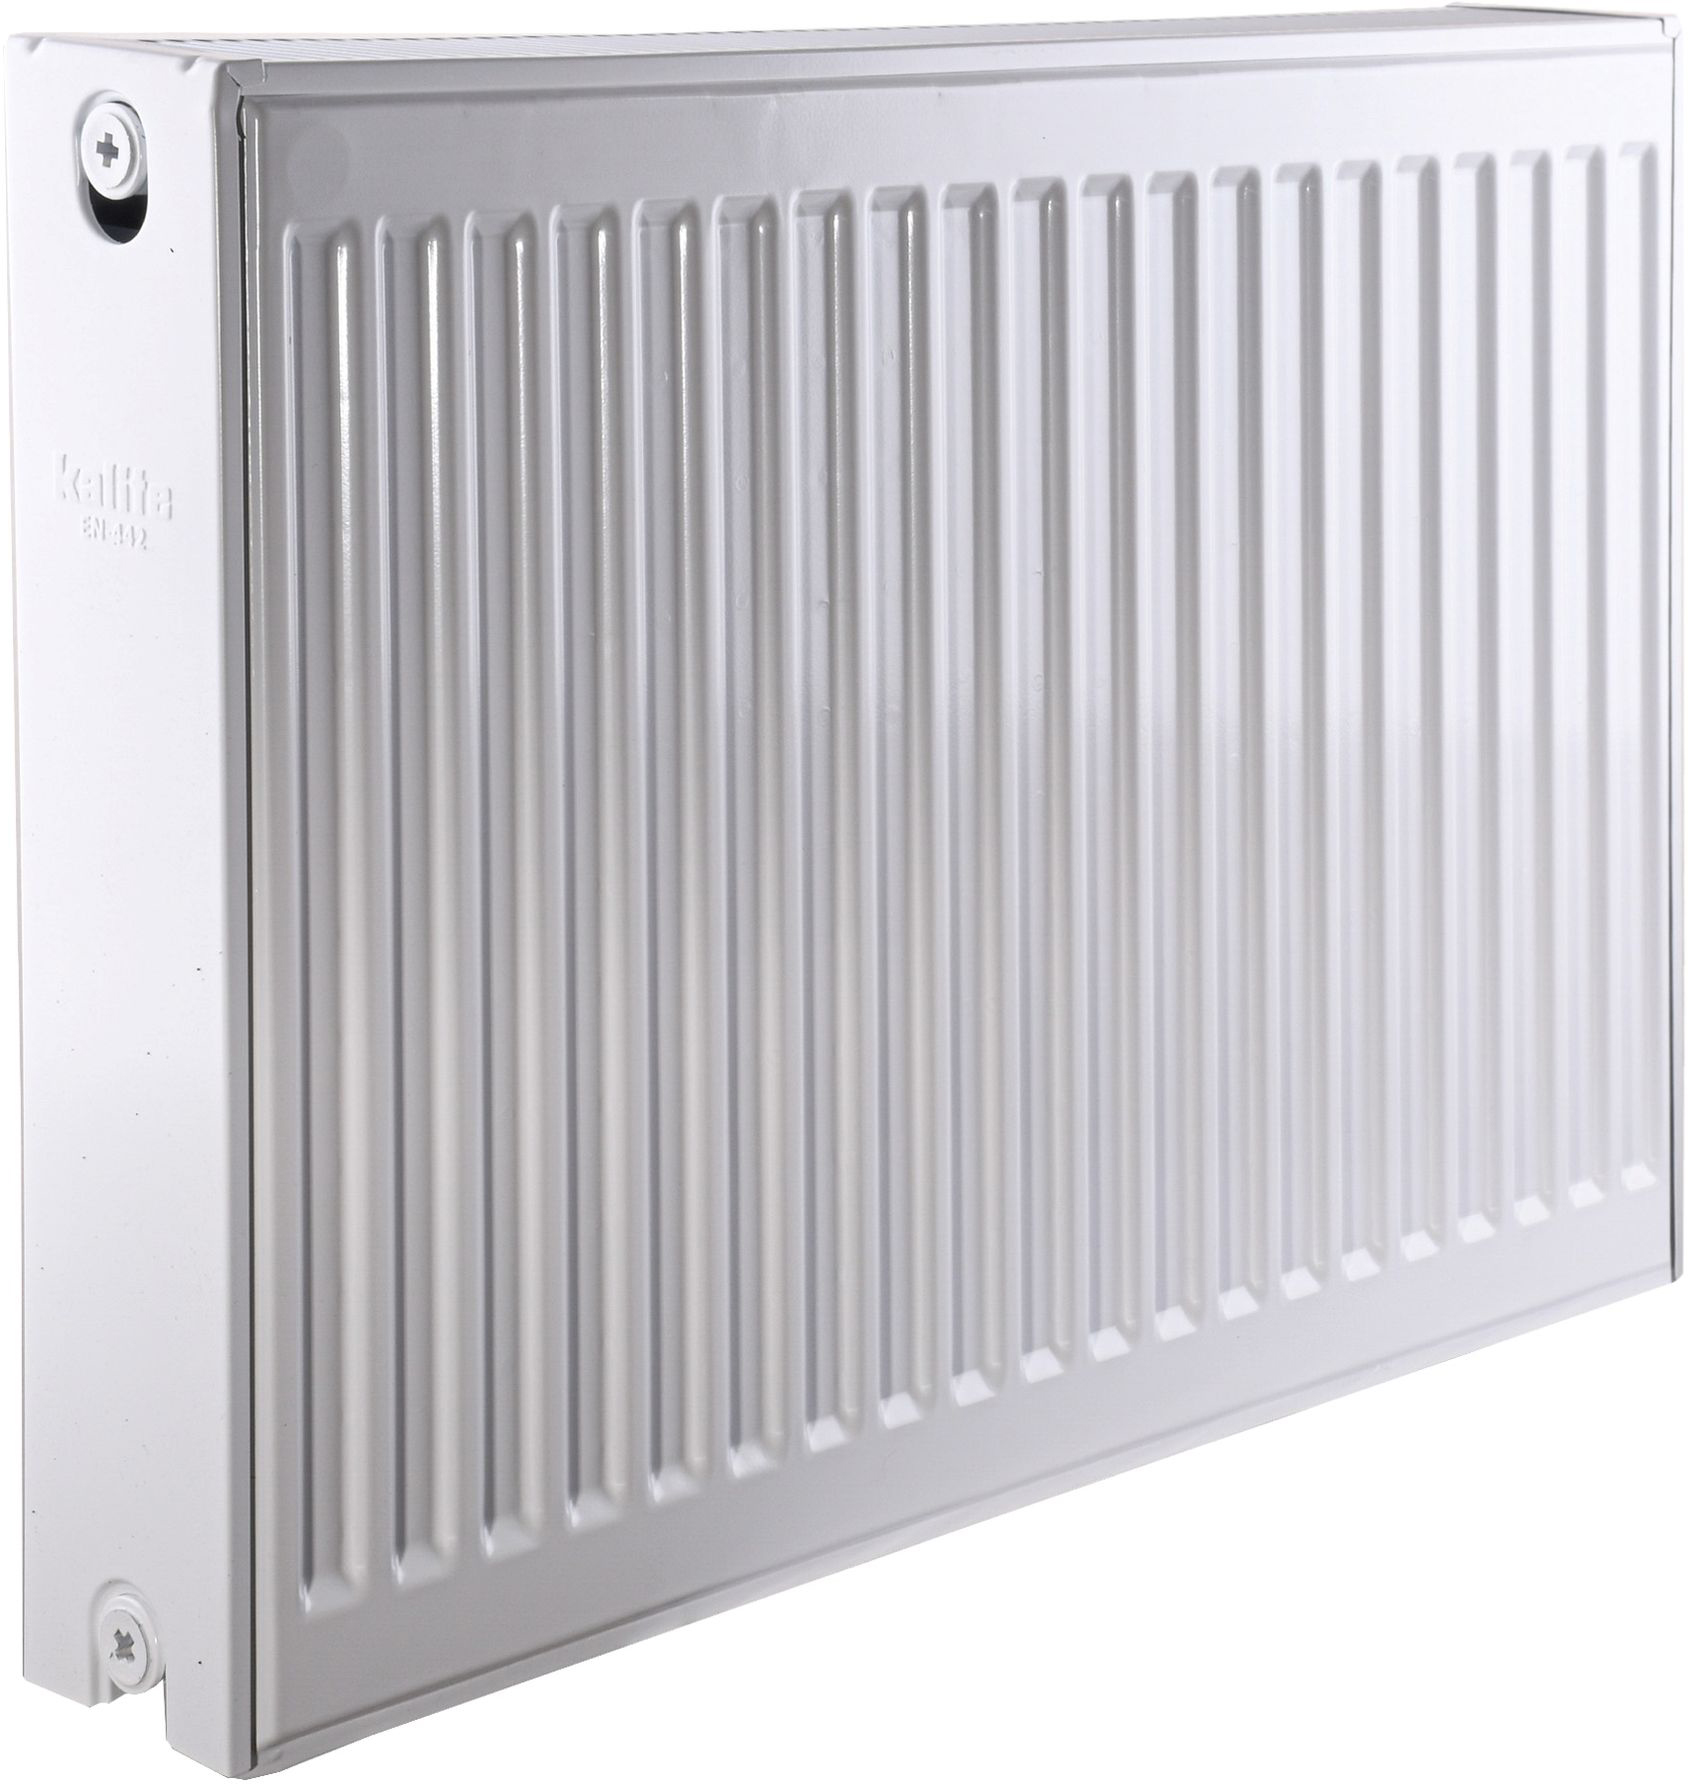 Радиатор для отопления Kalite 22 низ/справа 500x700 (без INNER)